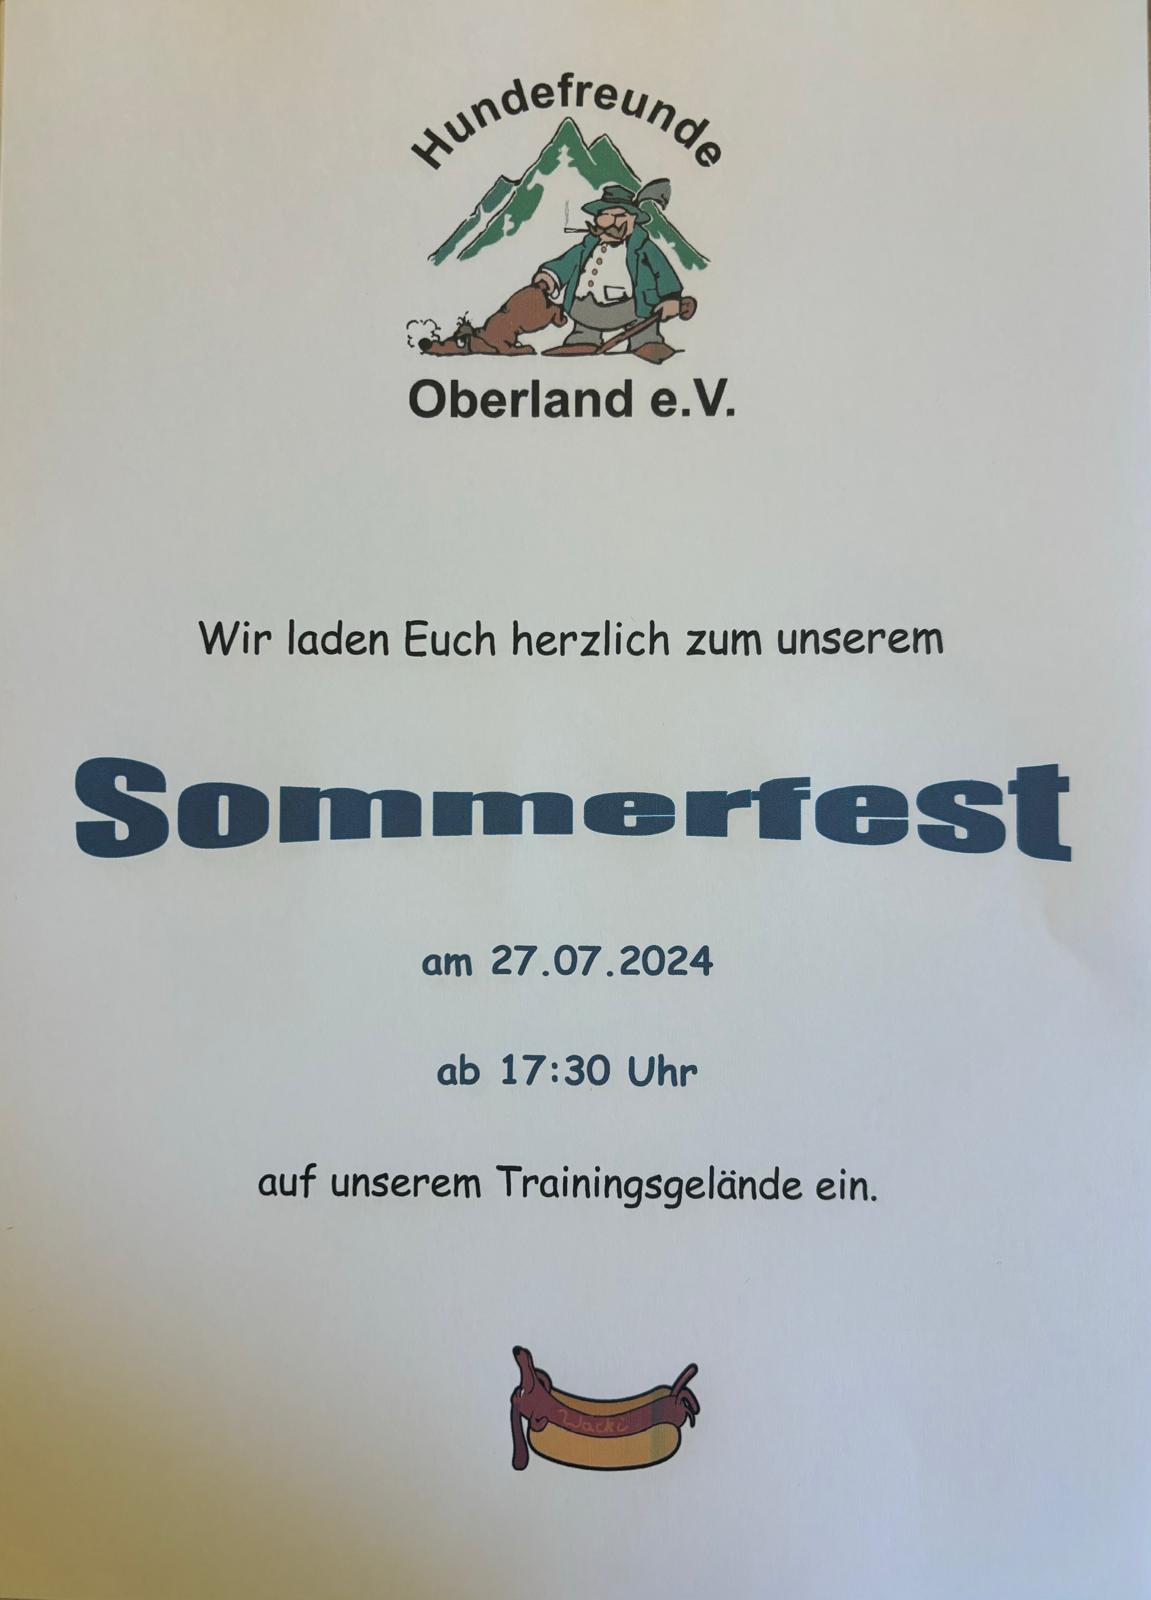 Featured image for “Einladung zu unserem Sommerfest”